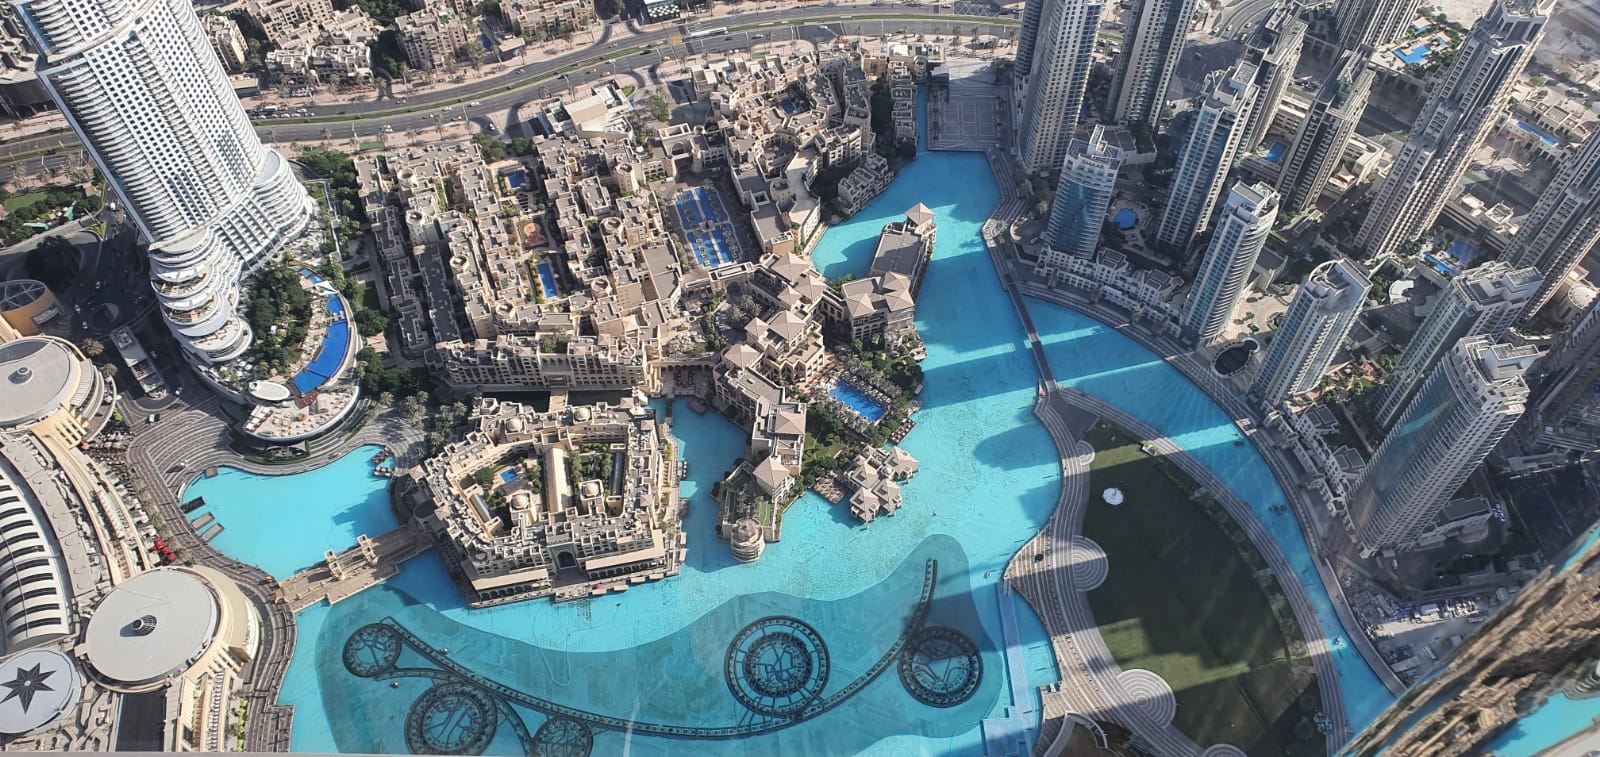 Dubai – The New Destination Of 2021